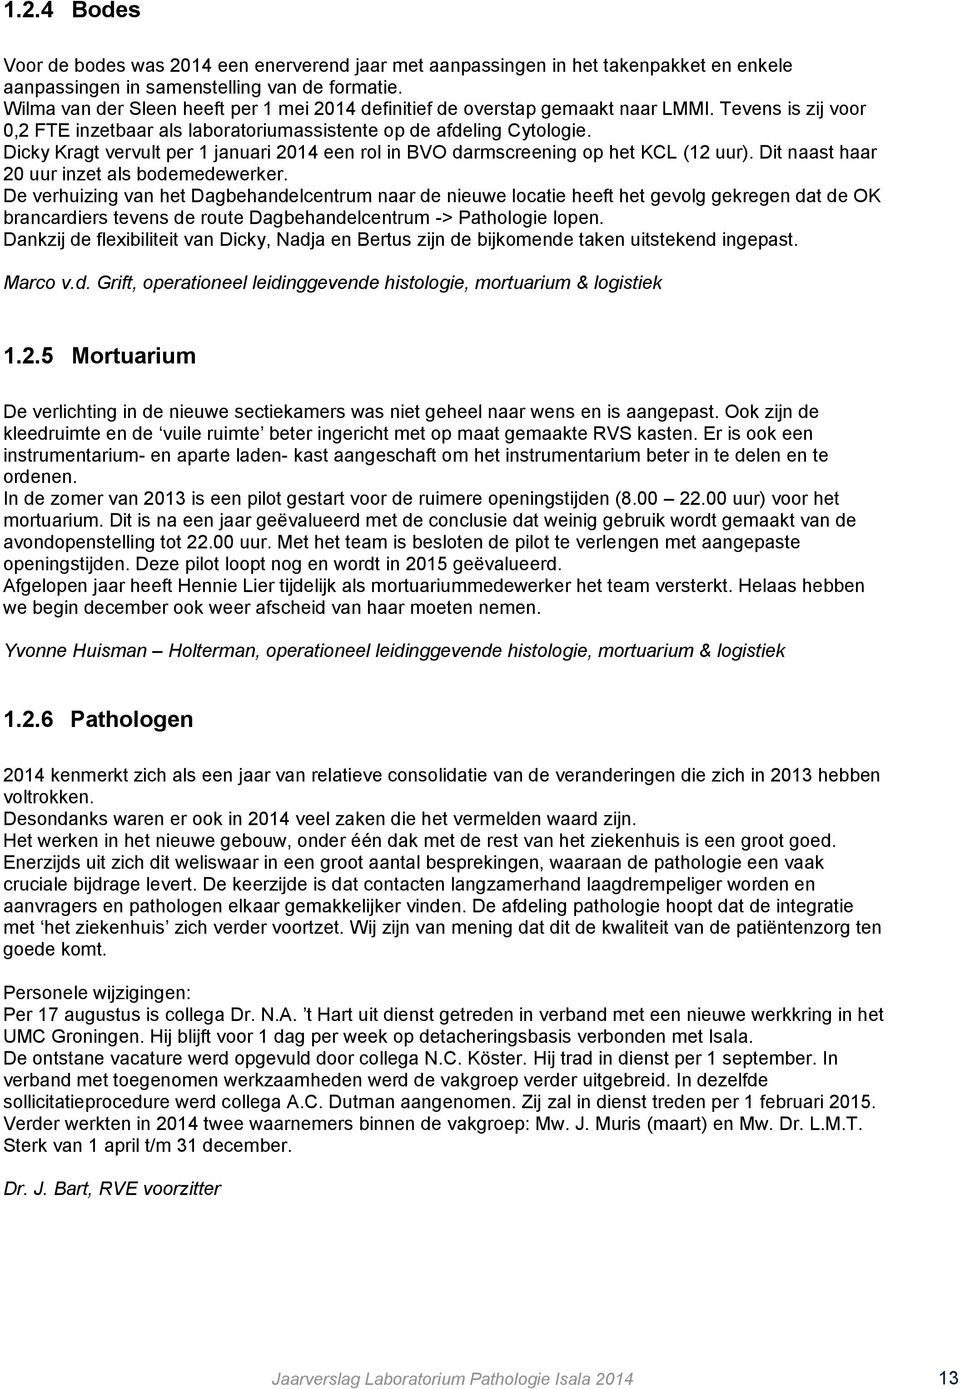 Dicky Kragt vervult per 1 januari 2014 een rol in BVO darmscreening op het KCL (12 uur). Dit naast haar 20 uur inzet als bodemedewerker.